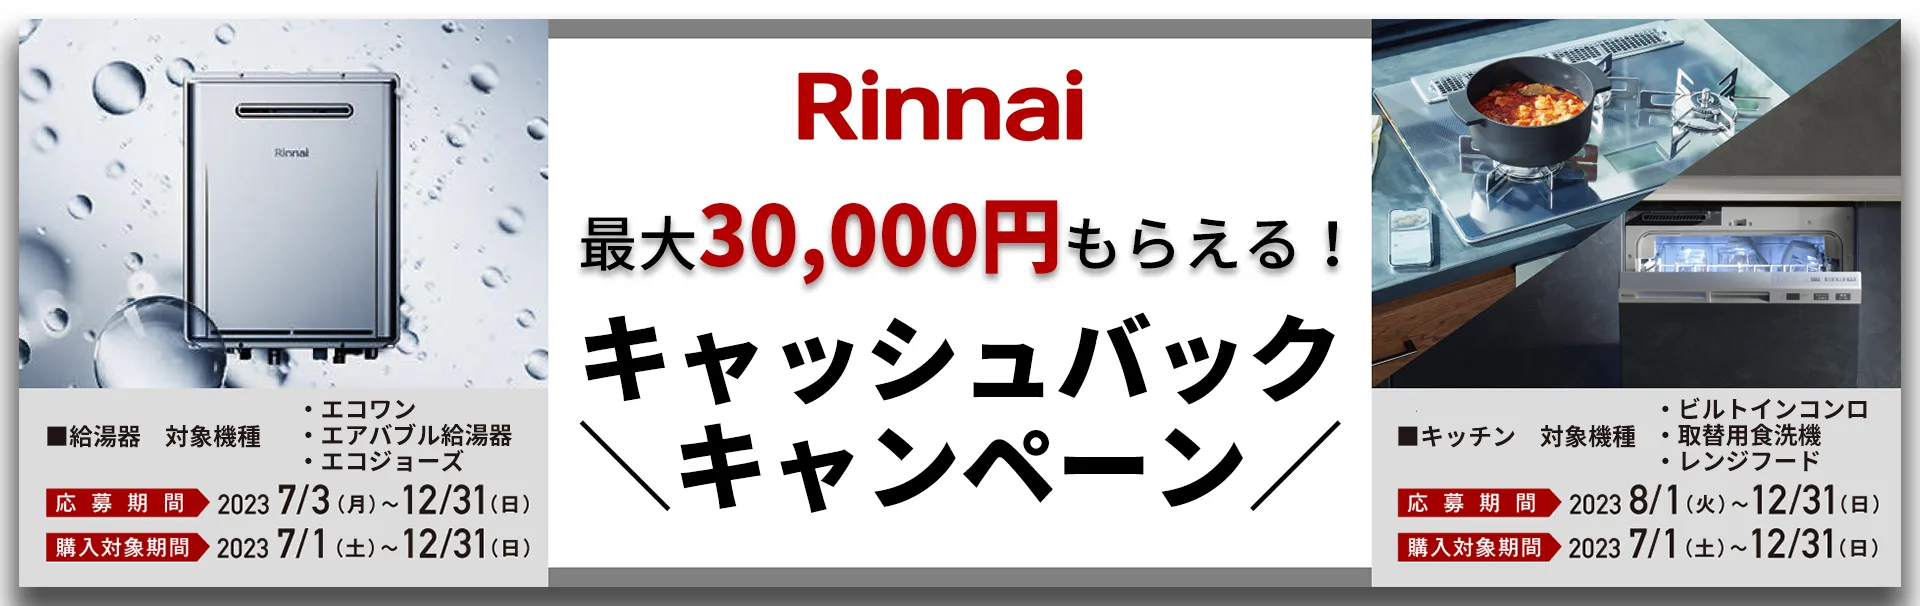 【リンナイ】最大30,000円キャッシュバックキャンペーン!!